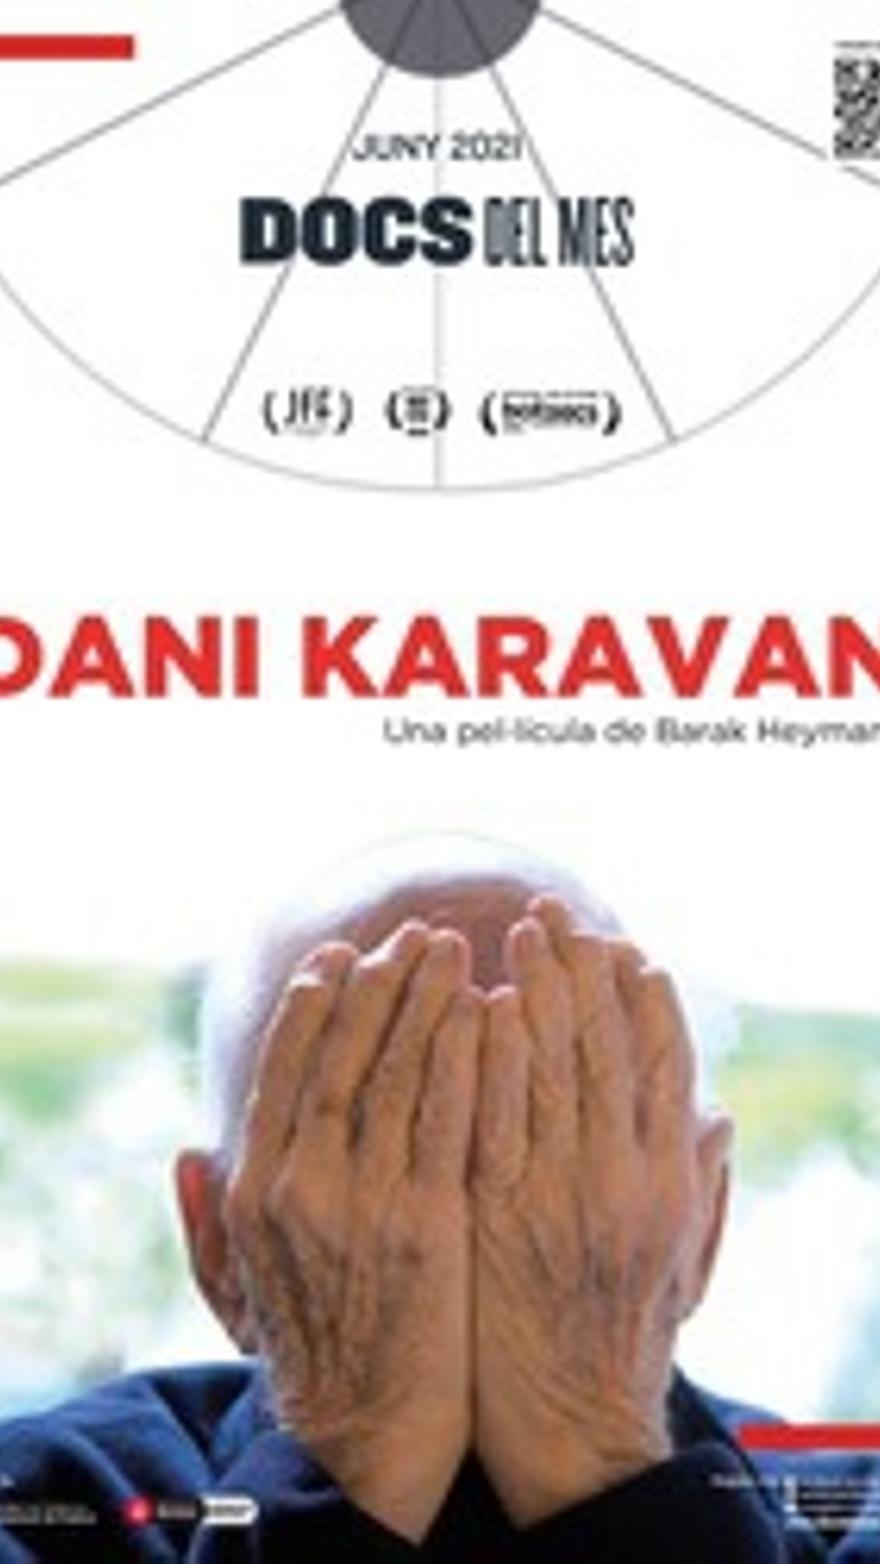 Dani Karavan